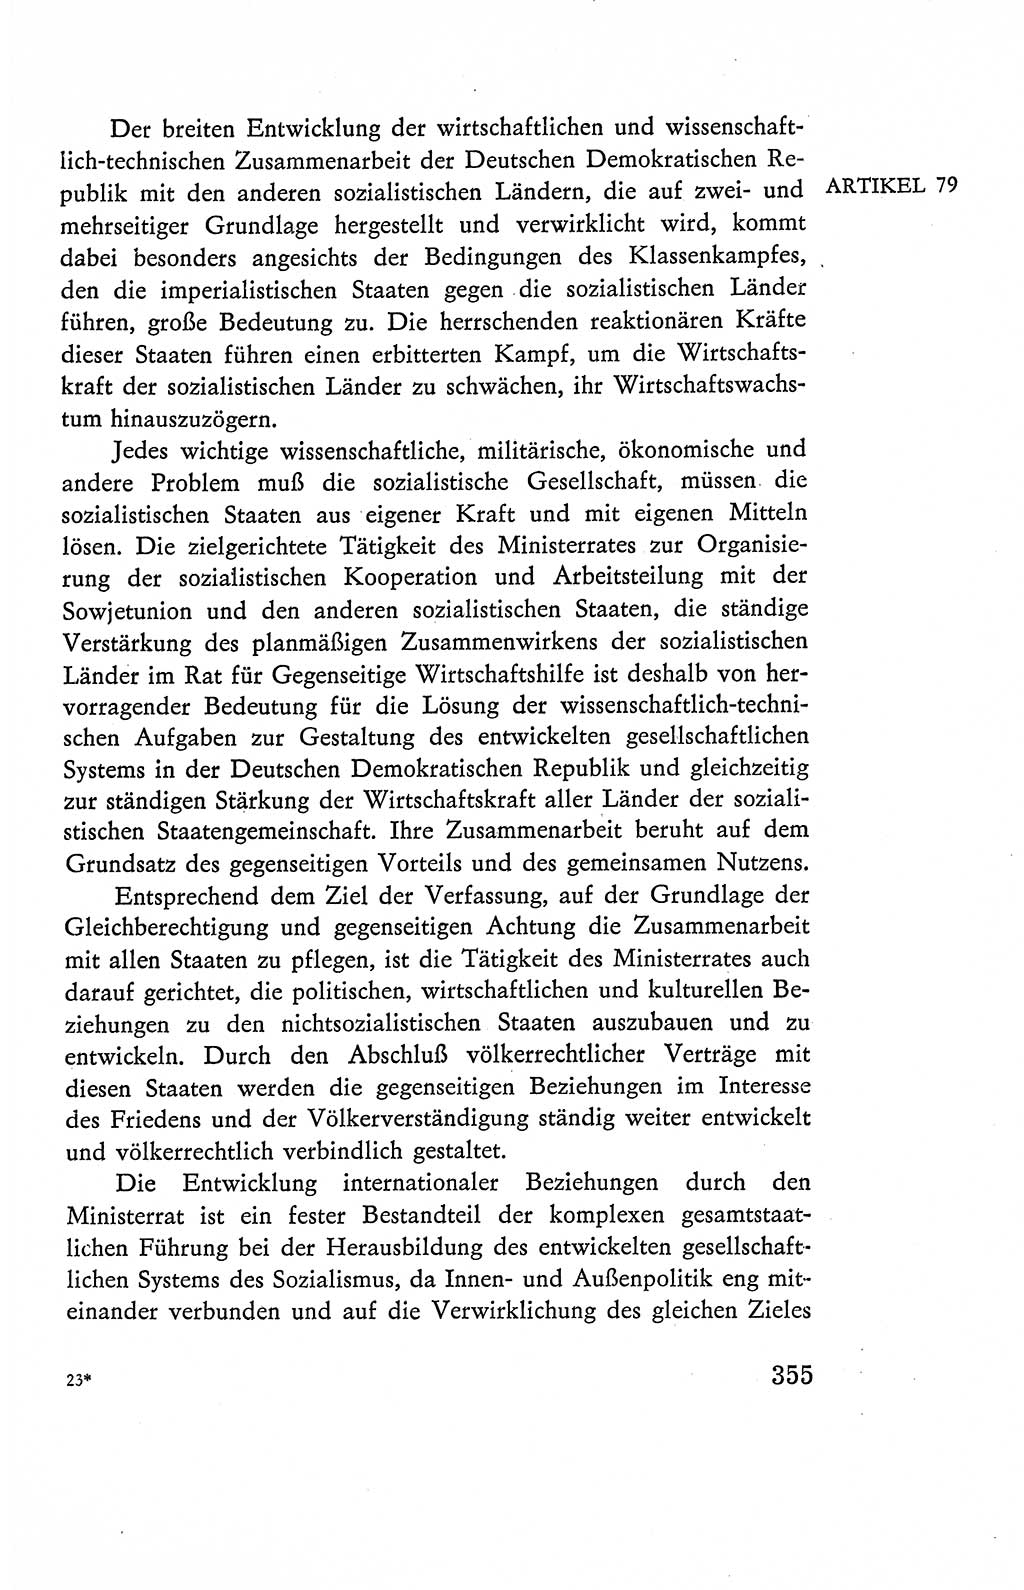 Verfassung der Deutschen Demokratischen Republik (DDR), Dokumente, Kommentar 1969, Band 2, Seite 355 (Verf. DDR Dok. Komm. 1969, Bd. 2, S. 355)